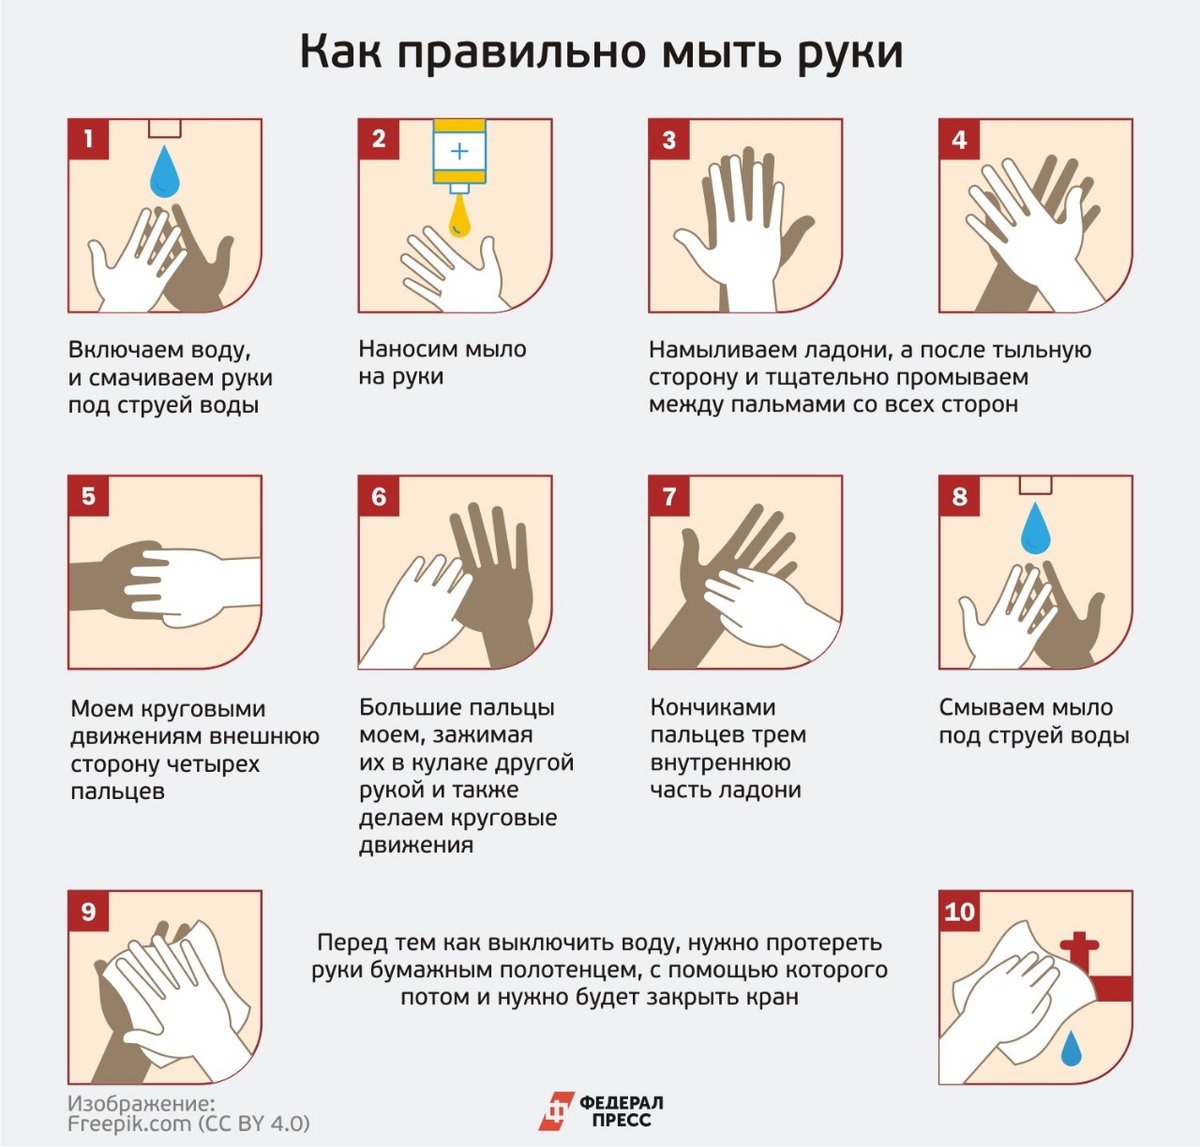 Мытье рук относится к. Как правильно мыть руки. КККМ правильн омыть руки. Памятка Моем руки правильно. КПК правилльнл мыть руки.